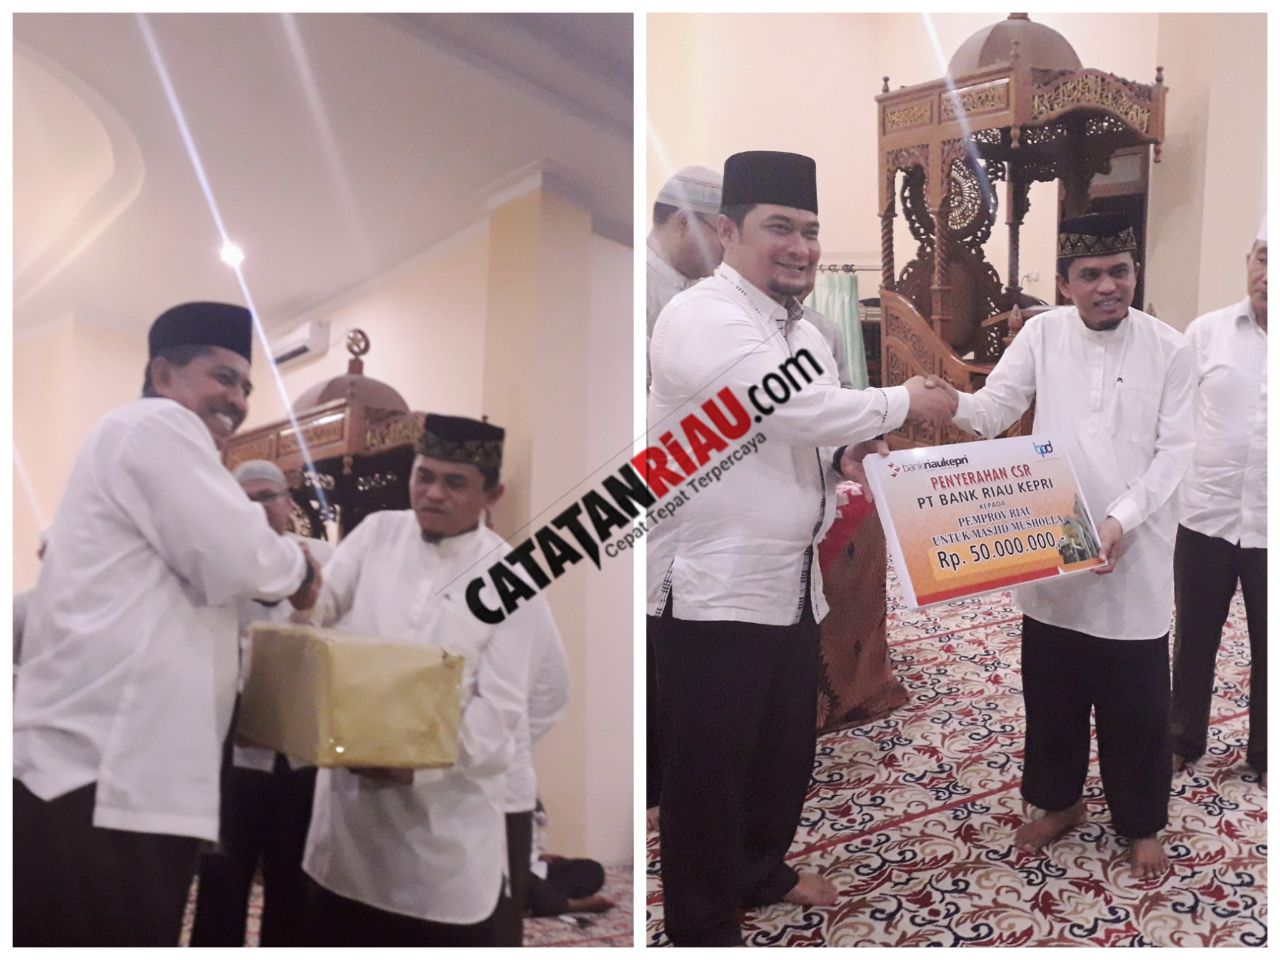 Pemprov Riau Gelar Safari Rhamadan Di Masjid Raya Kecamatan Minas, Kabupaten Siak.